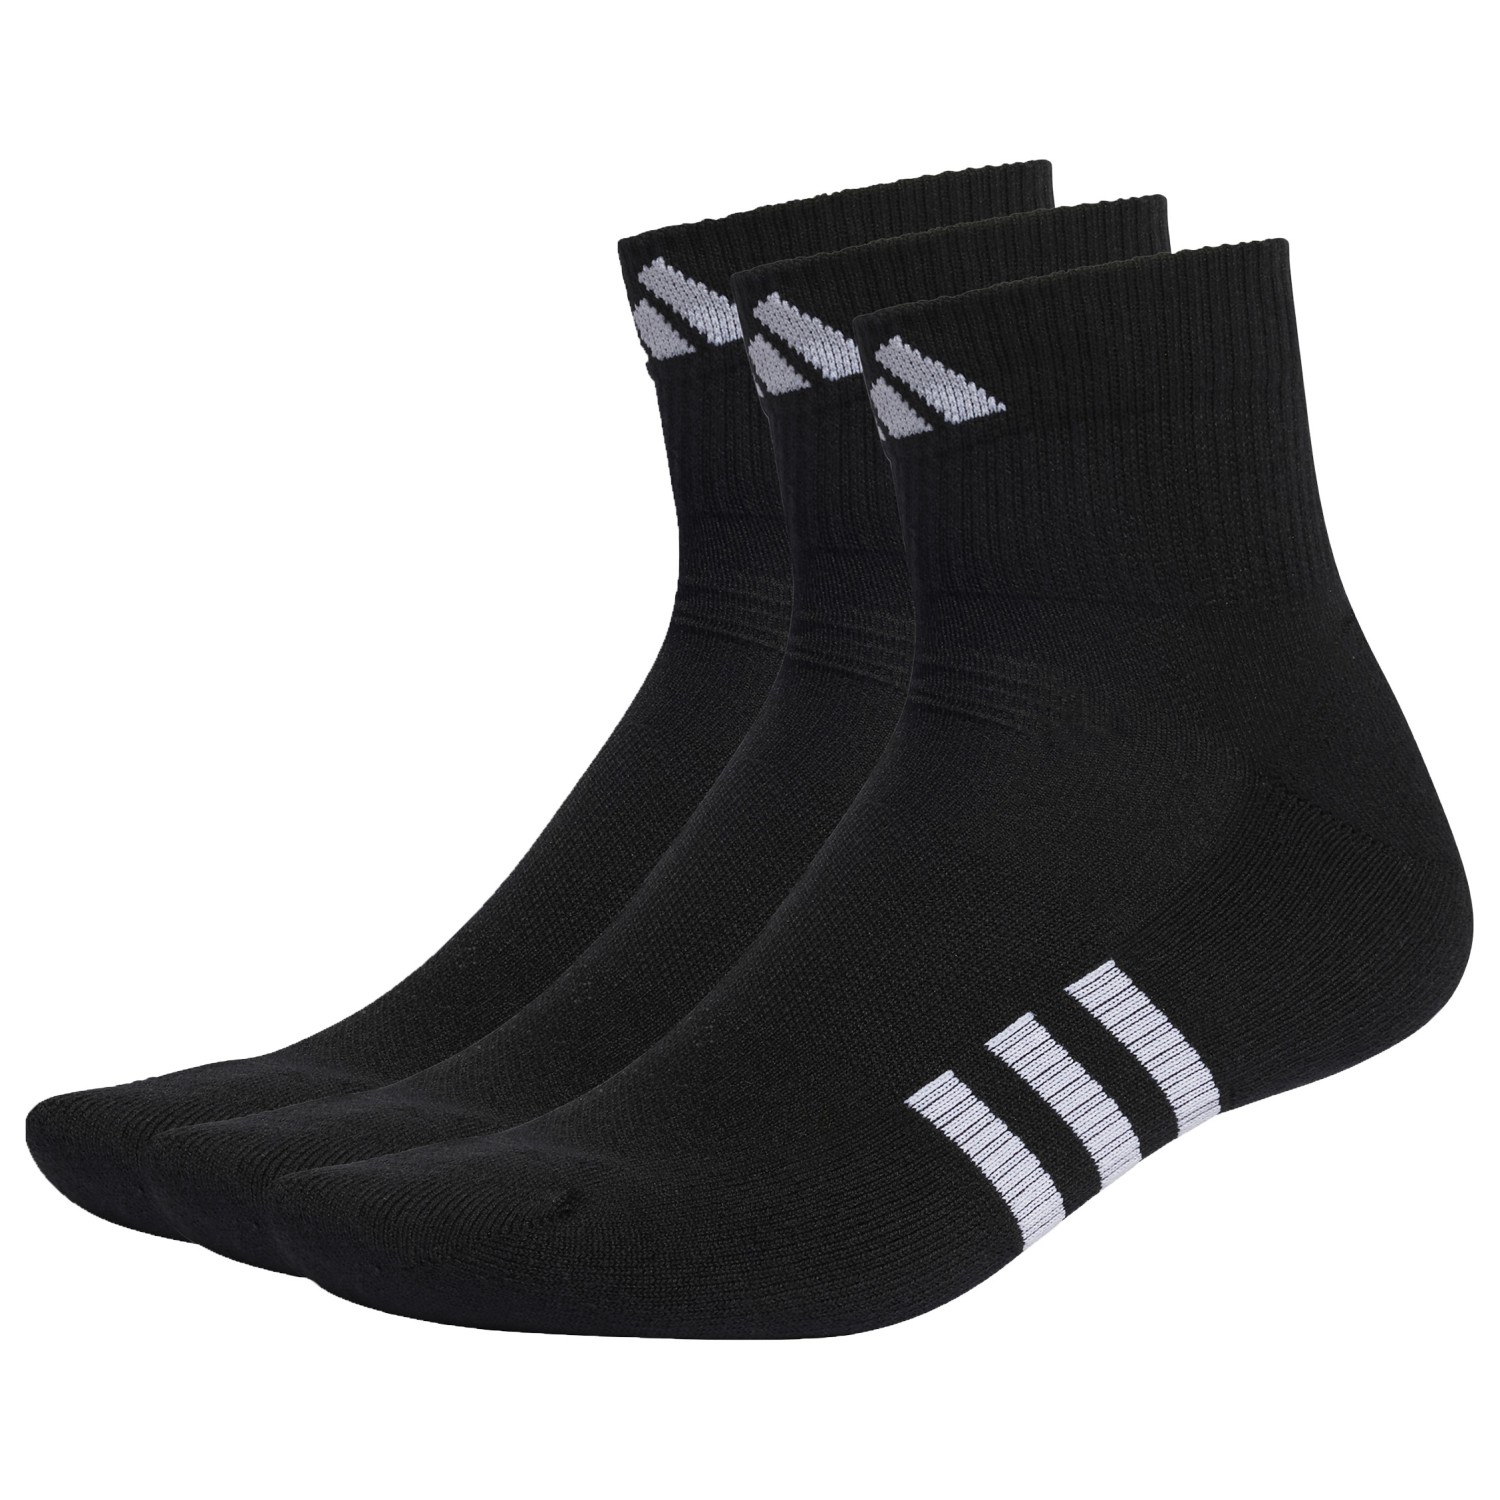 Многофункциональные носки Adidas Performancef Cushioned Mid 3 Pack, цвет Black/Black/Black цена и фото